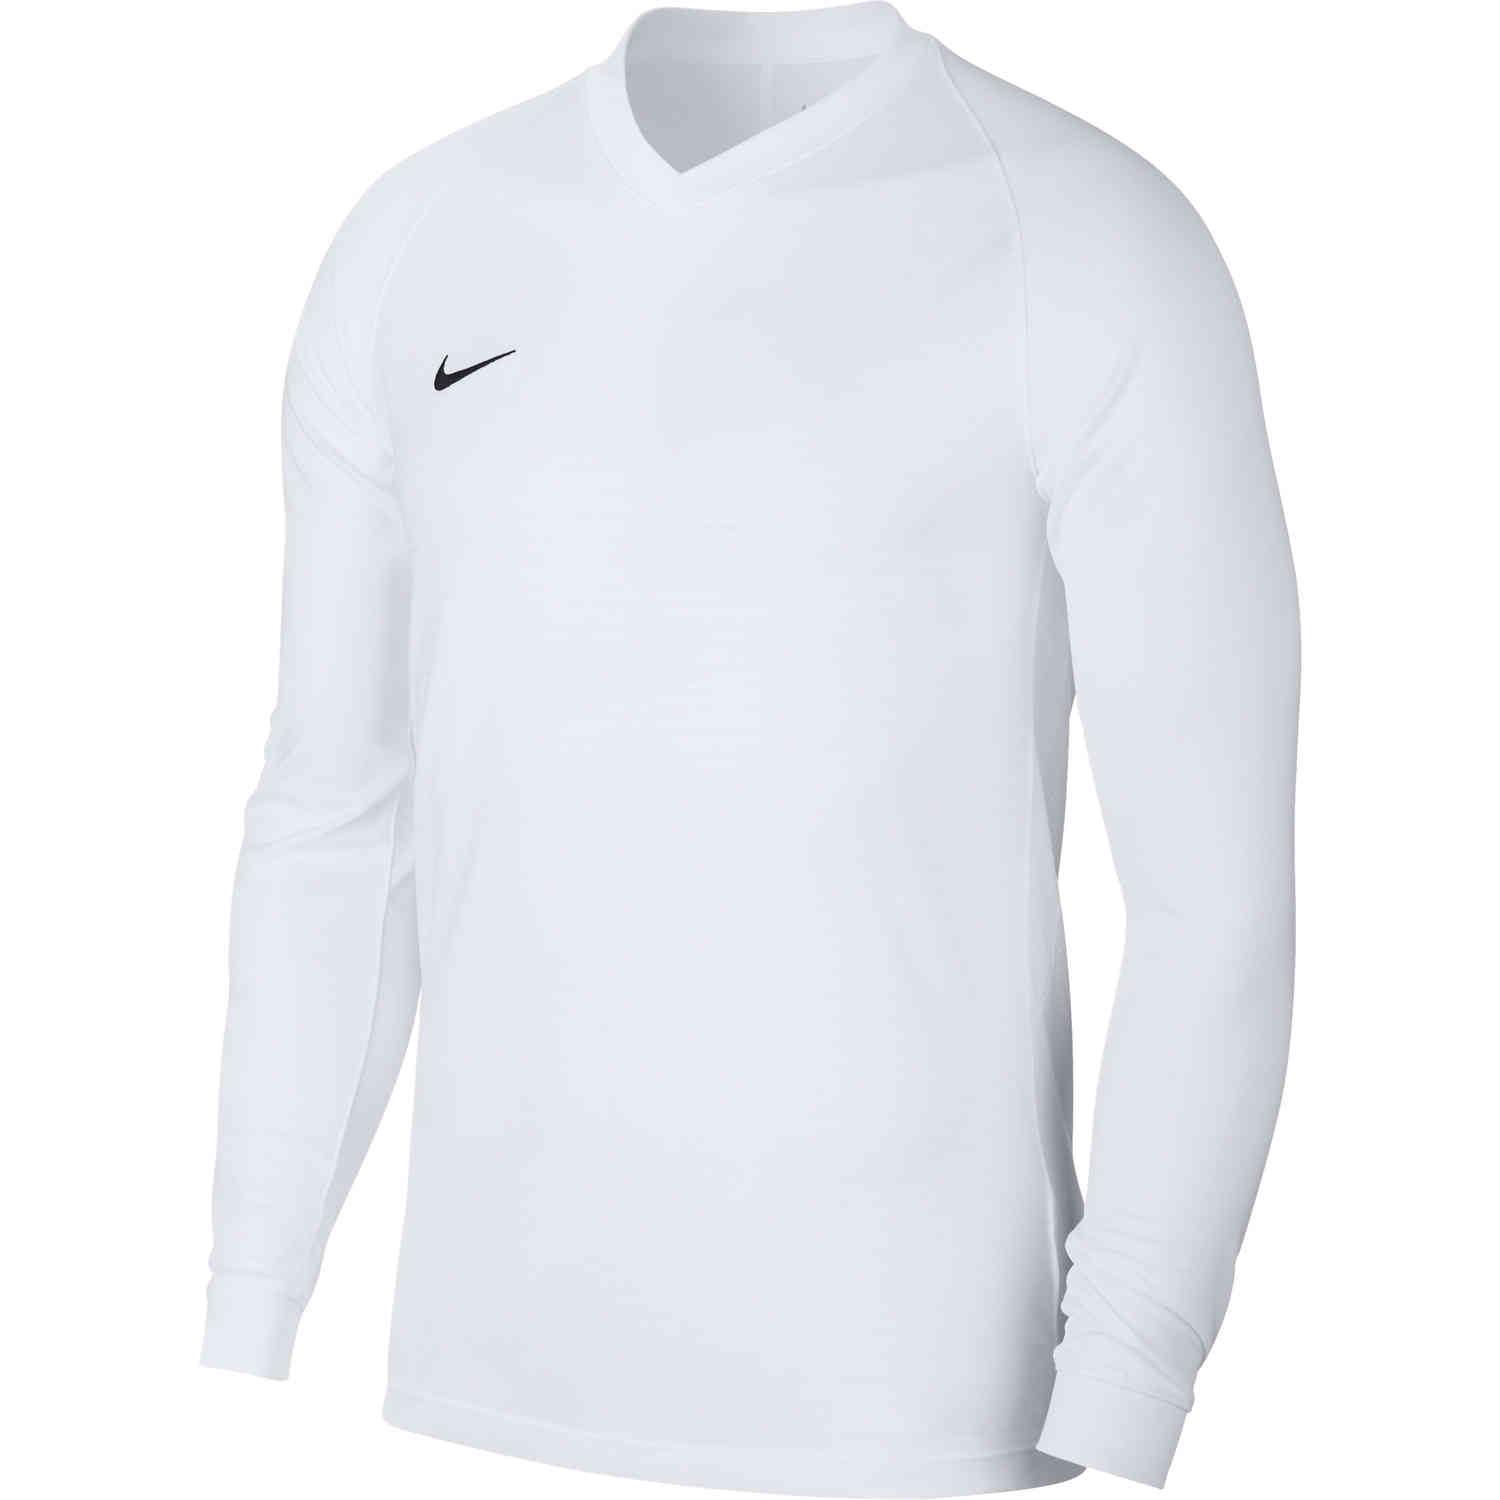 Nike Tiempo Premier L/S Jersey - White - SoccerPro